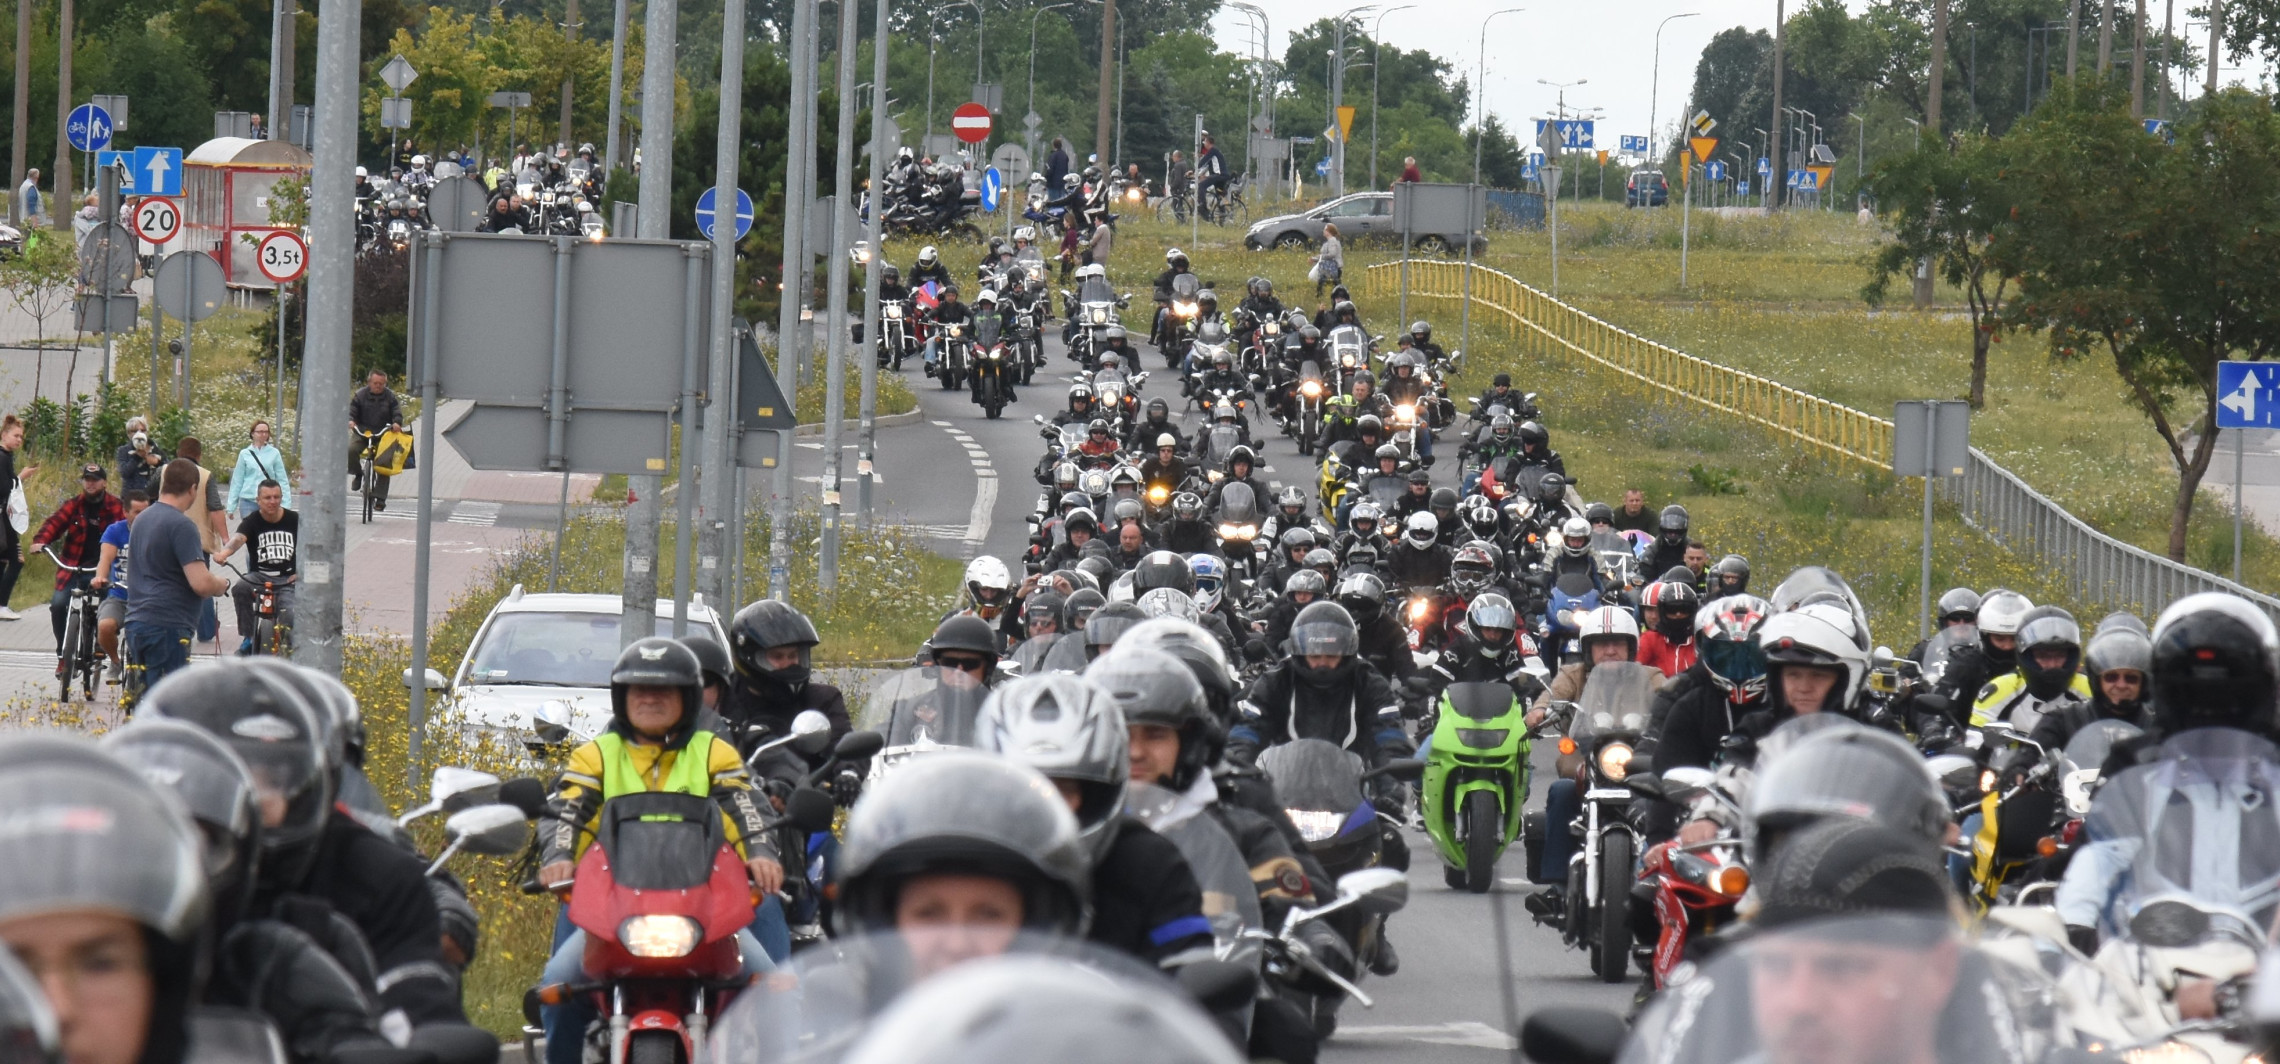 Inowrocław - 2 lipca Inowrocław opanują motocykliści